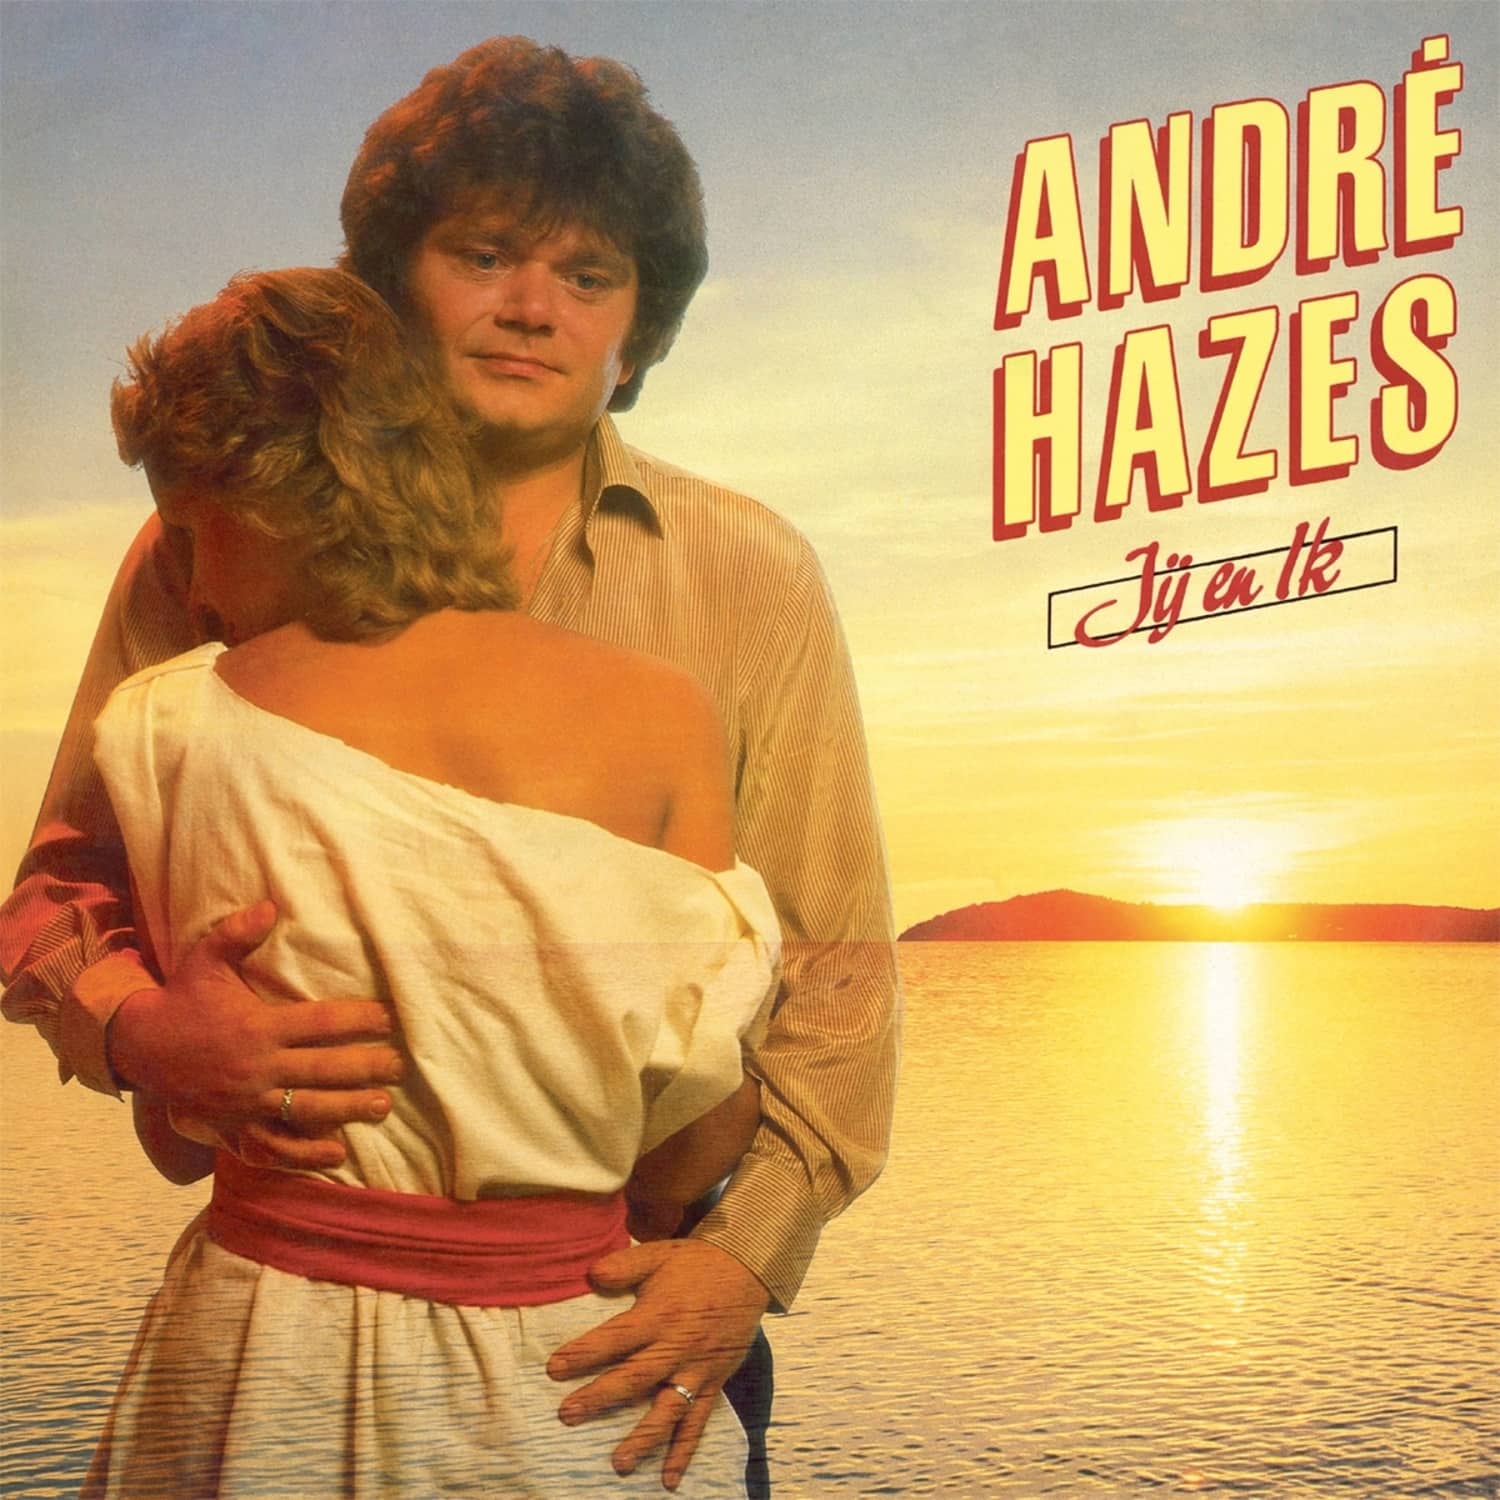 Andre Hazes - JIJ EN IK 